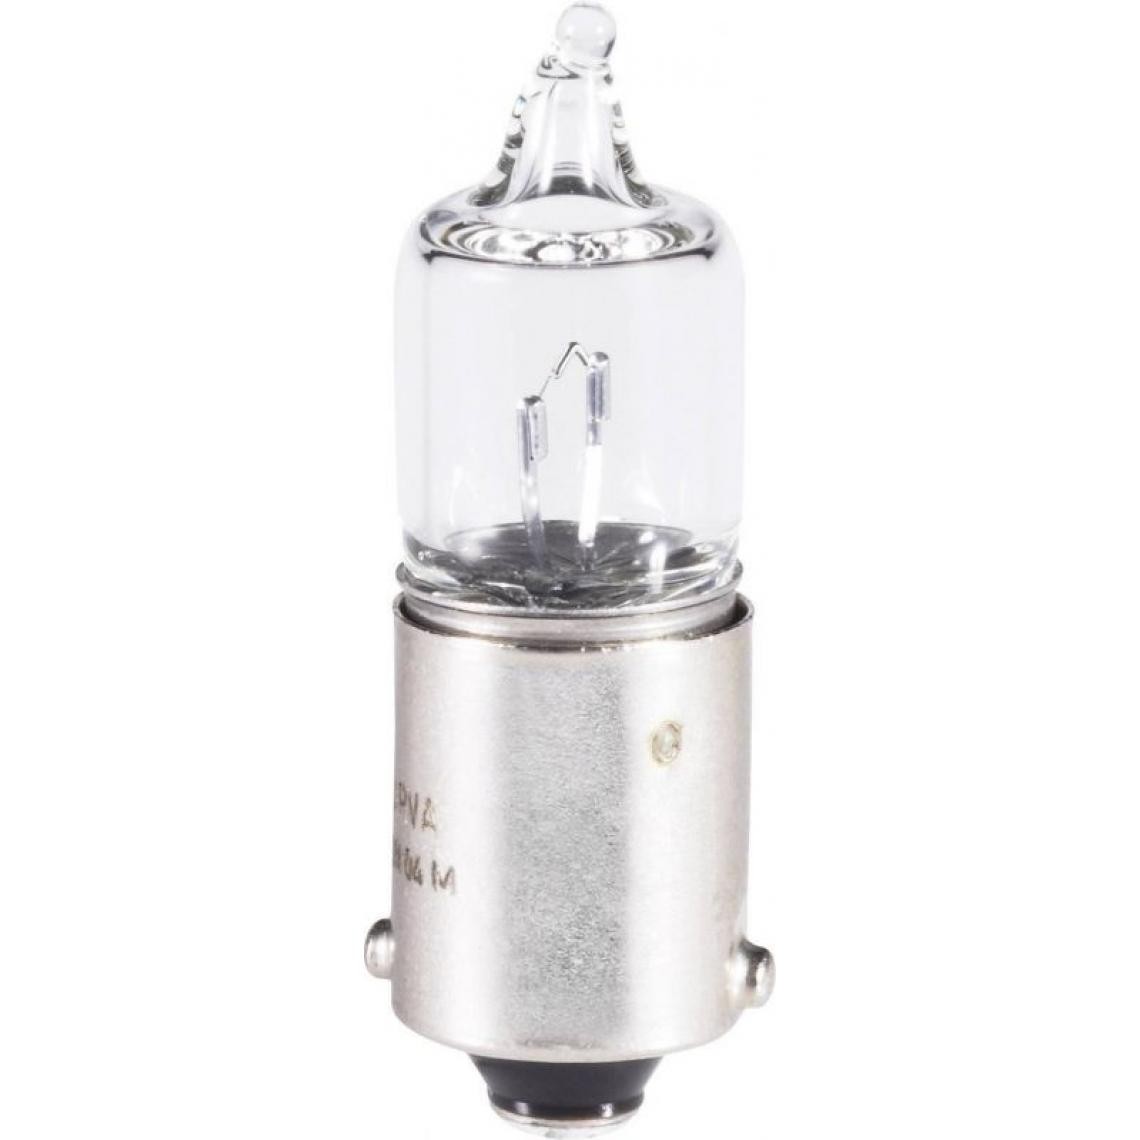 Inconnu - Barthelme Miniatur-Halogenlampe 12V 20W BA9s clair 01641150 1St. - Ampoules LED